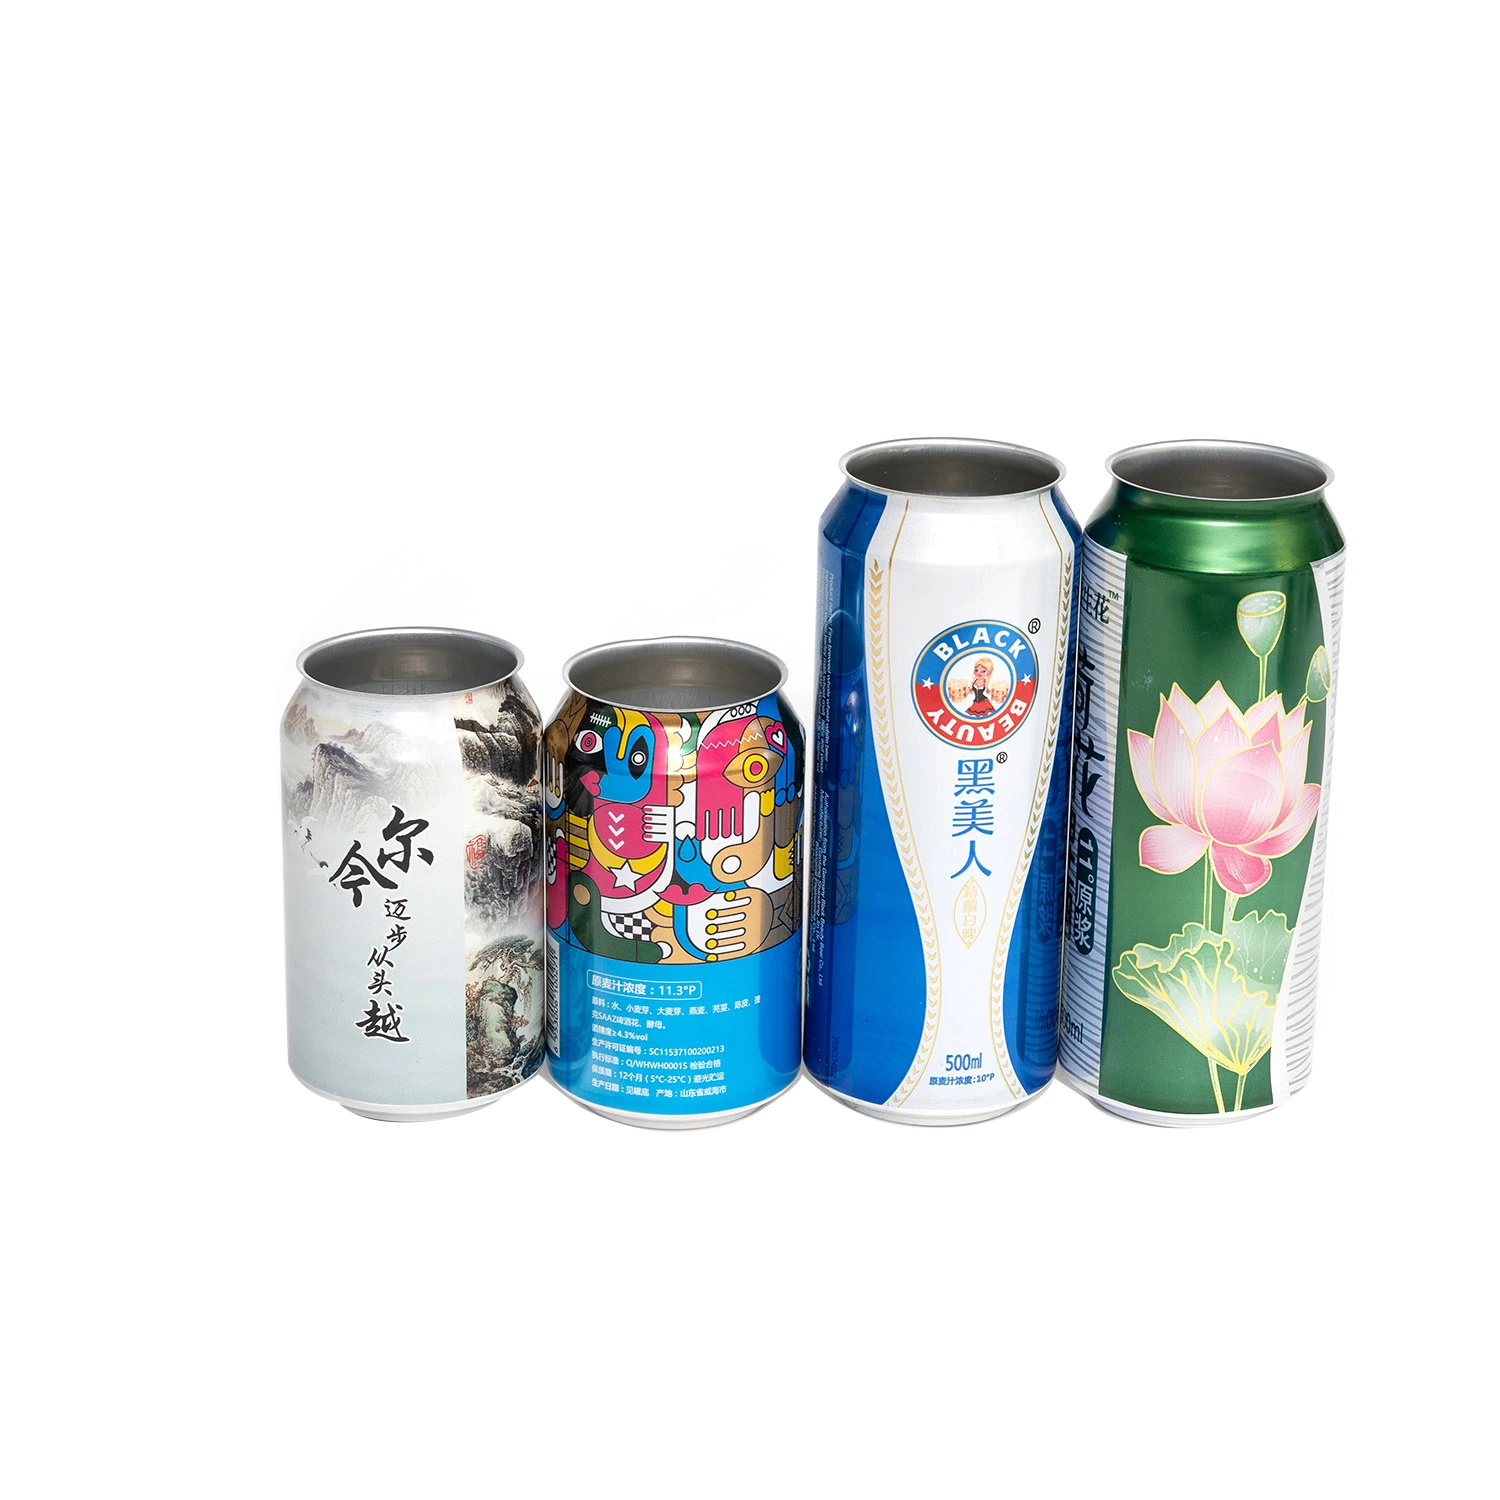 يمكن أن يكون الألومنيوم معيارَ علبة مشروبات أنيقة سعة 355 مل مصنع الجعة بالجملة مع بطانة خالية من مادة البينول BPA لعصير الصودا CAN